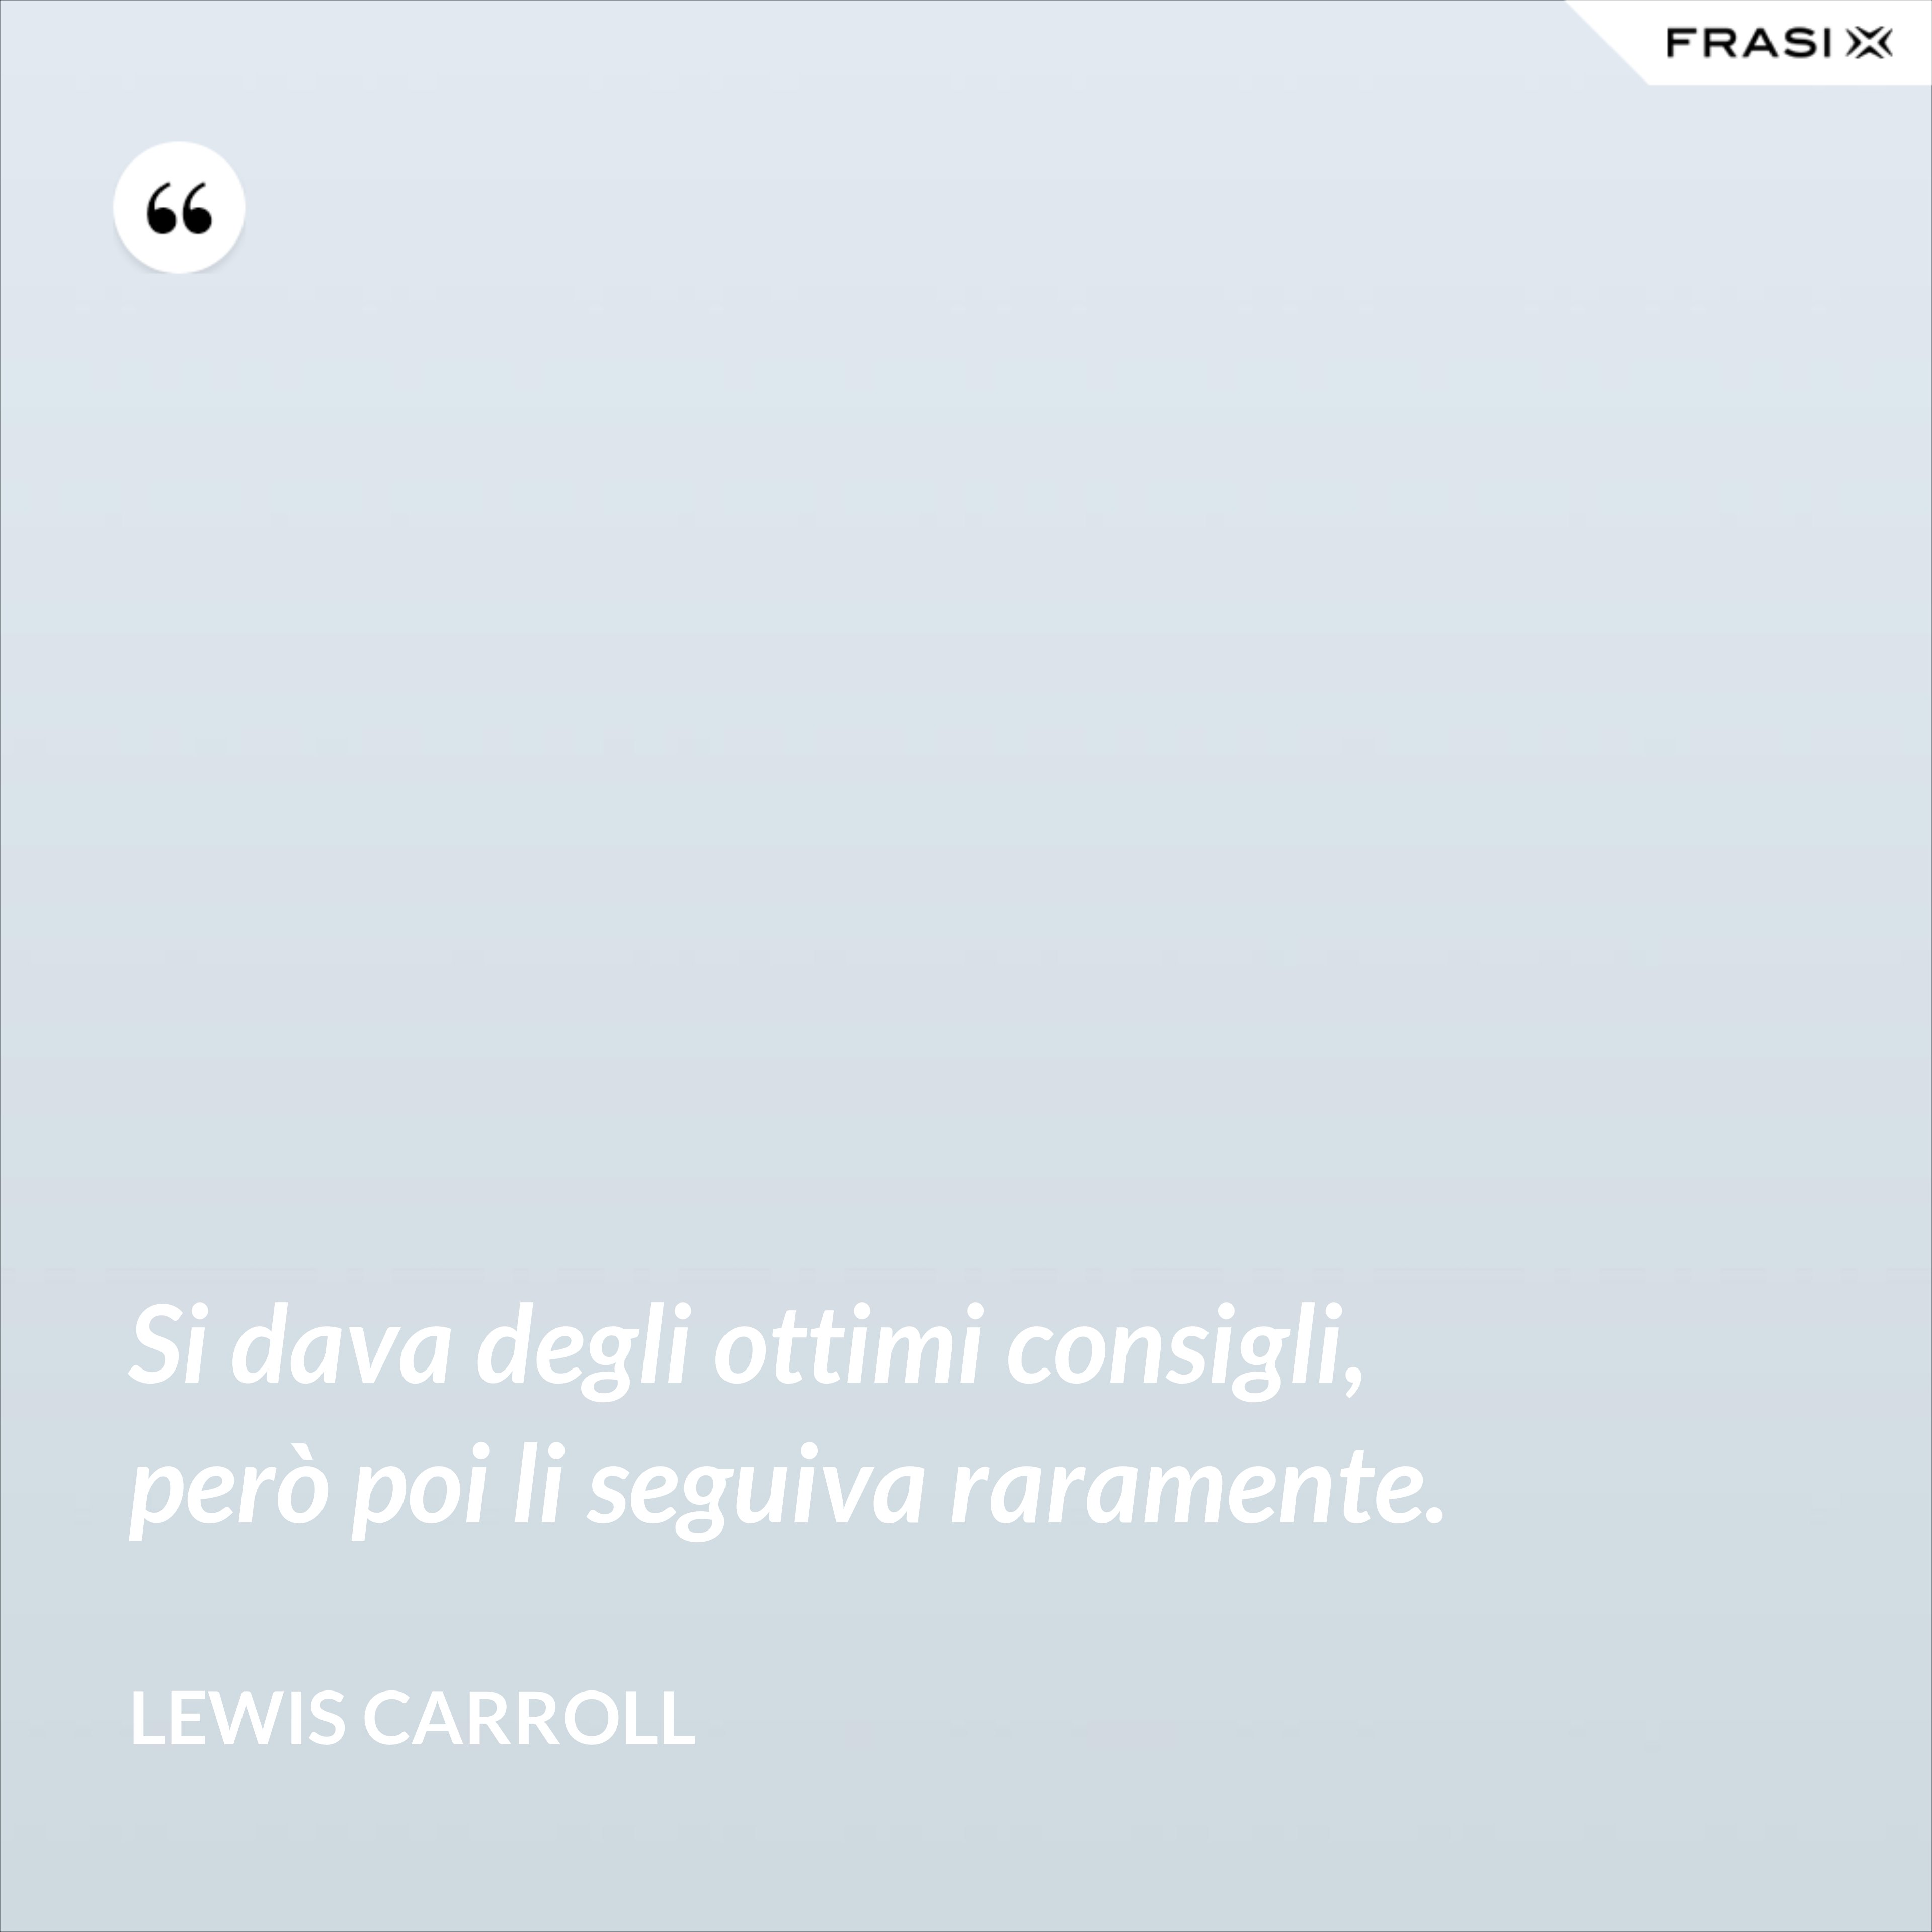 Si dava degli ottimi consigli, però poi li seguiva raramente. - Lewis Carroll